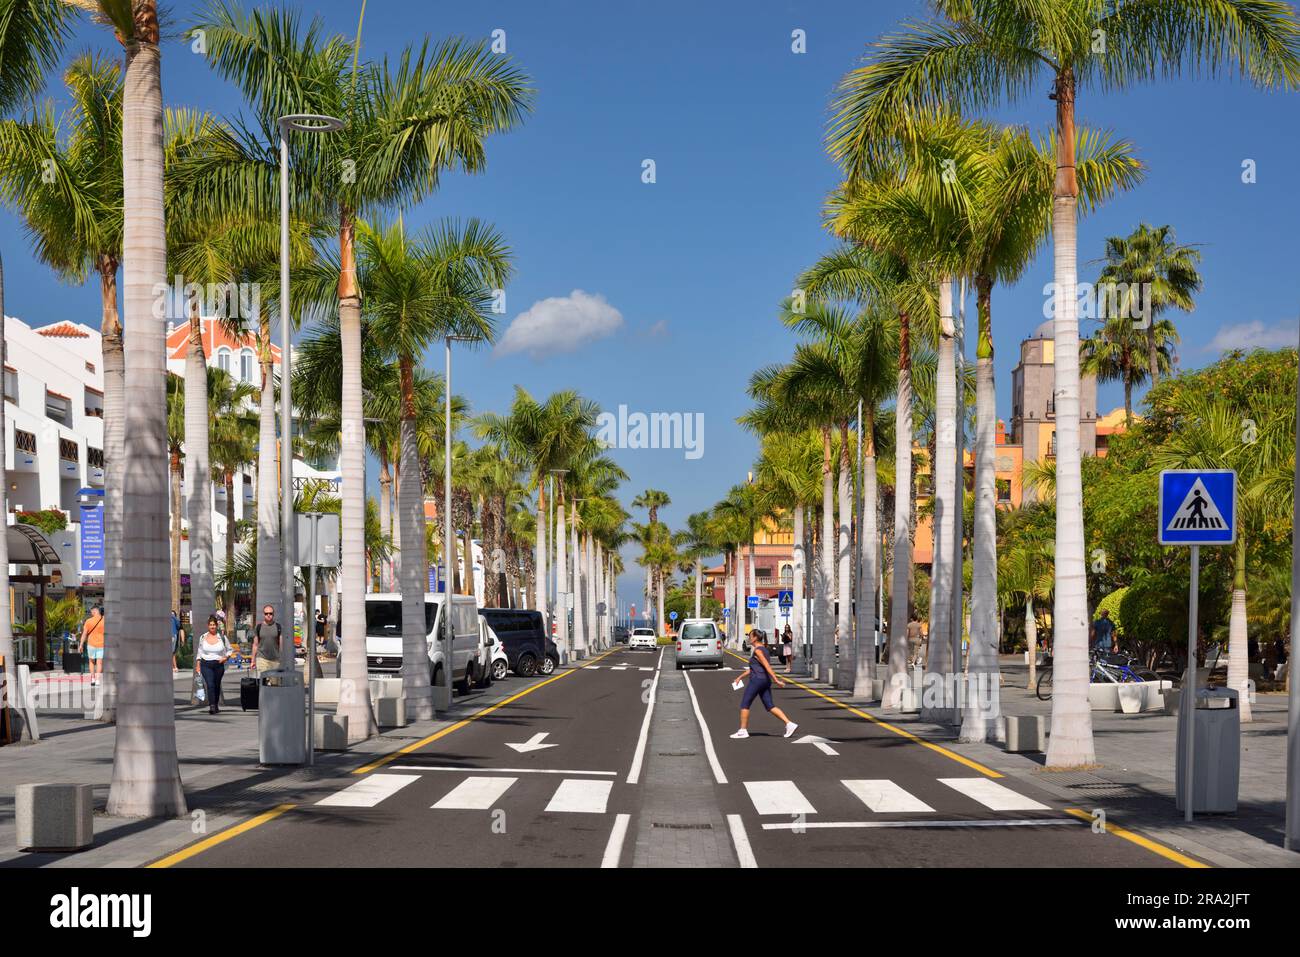 Spanien, Kanarische Inseln, Teneriffa, Las Americas, playa de Las Americas, Las Americas Avenue, touristisches Zentrum Stockfoto